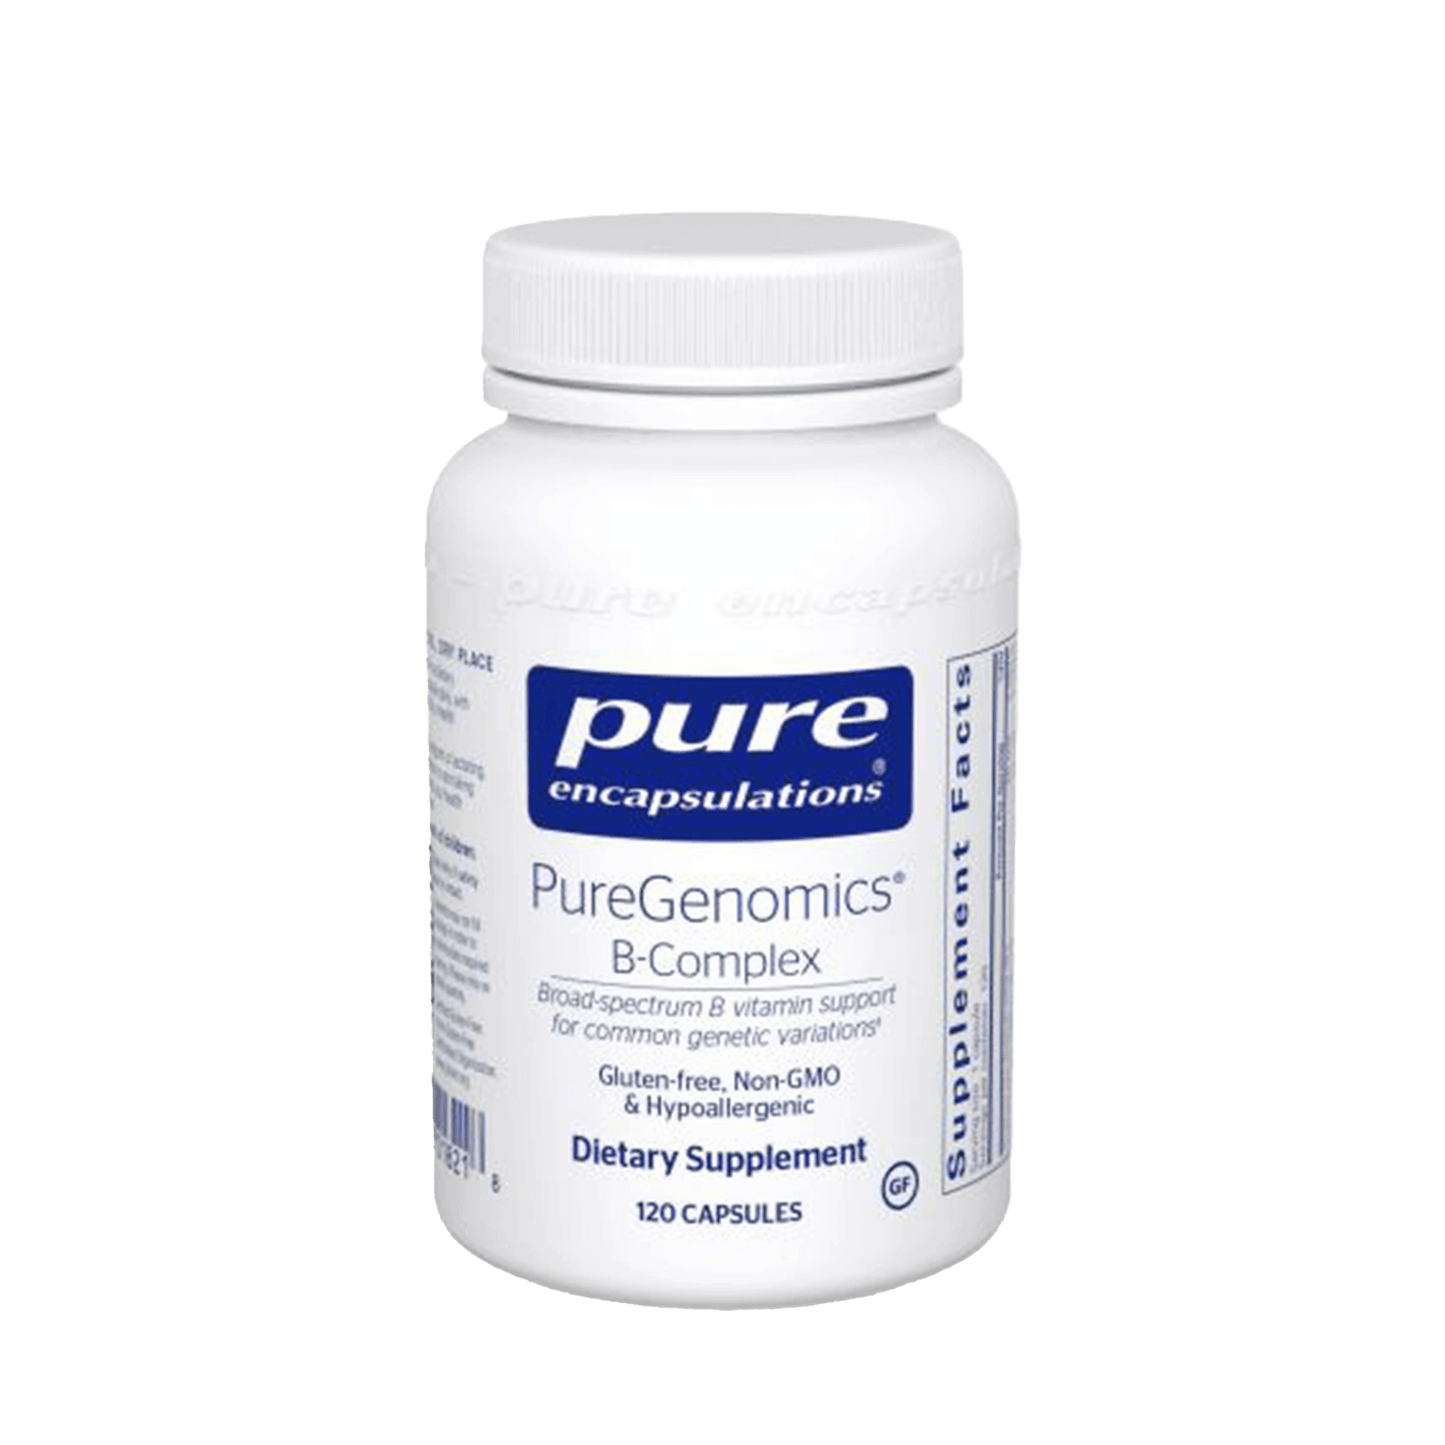 Pure Encapsulations PureGenomics B-Complex Capsules